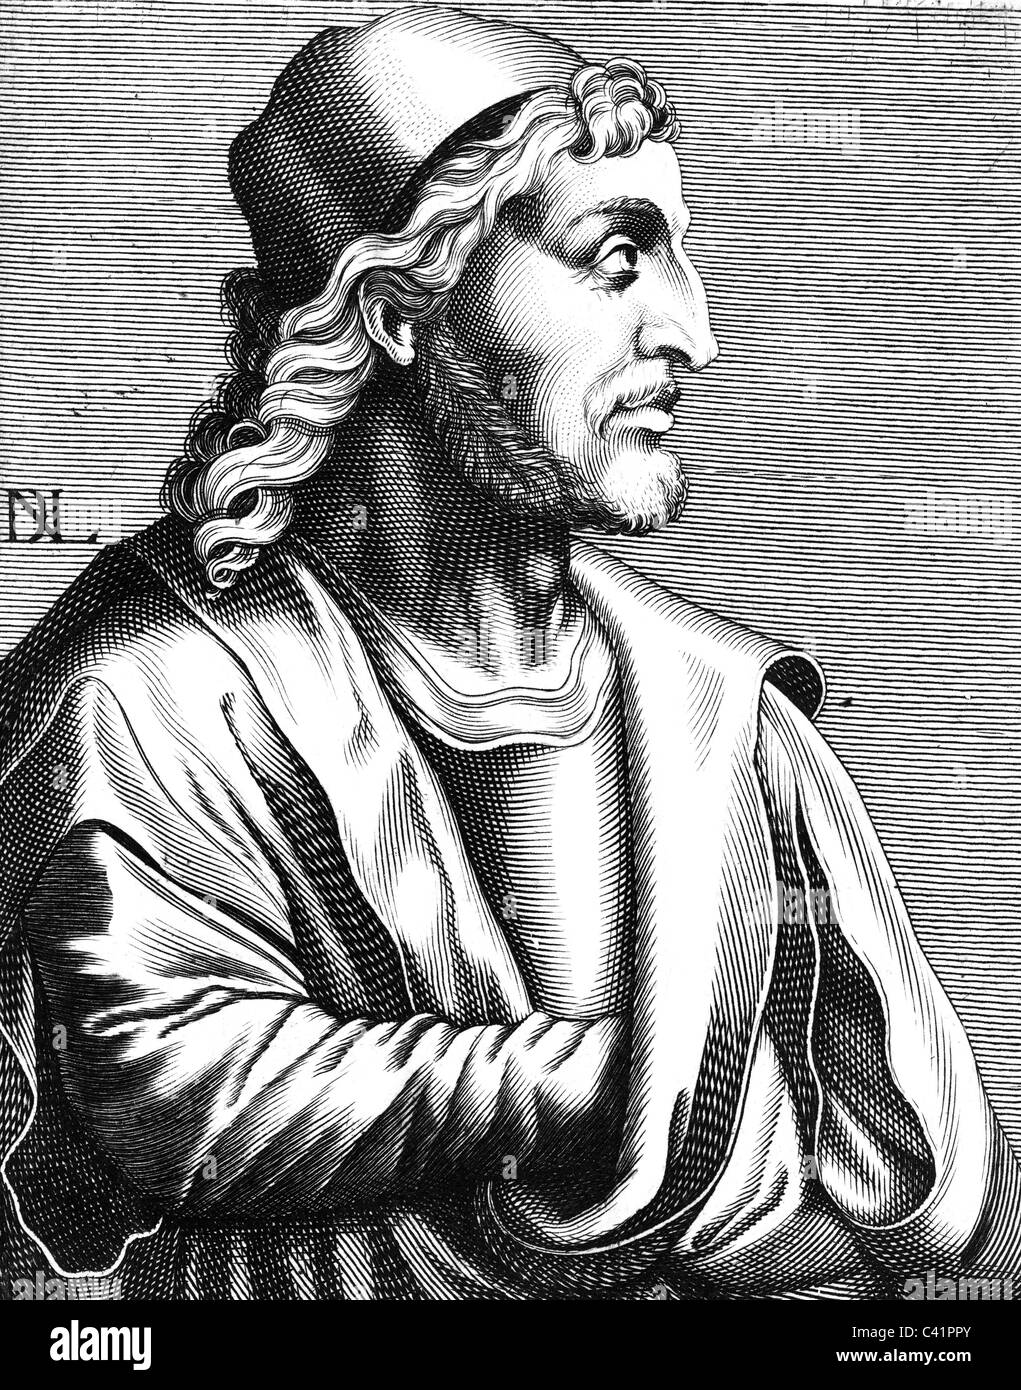 Martini, Simone, 1284 - 1344, peintre italien, demi-longueur, gravure sur cuivre par Nicolas de Larmessin (1640-1725), auteur de l'artiste n'a pas à être effacée Banque D'Images